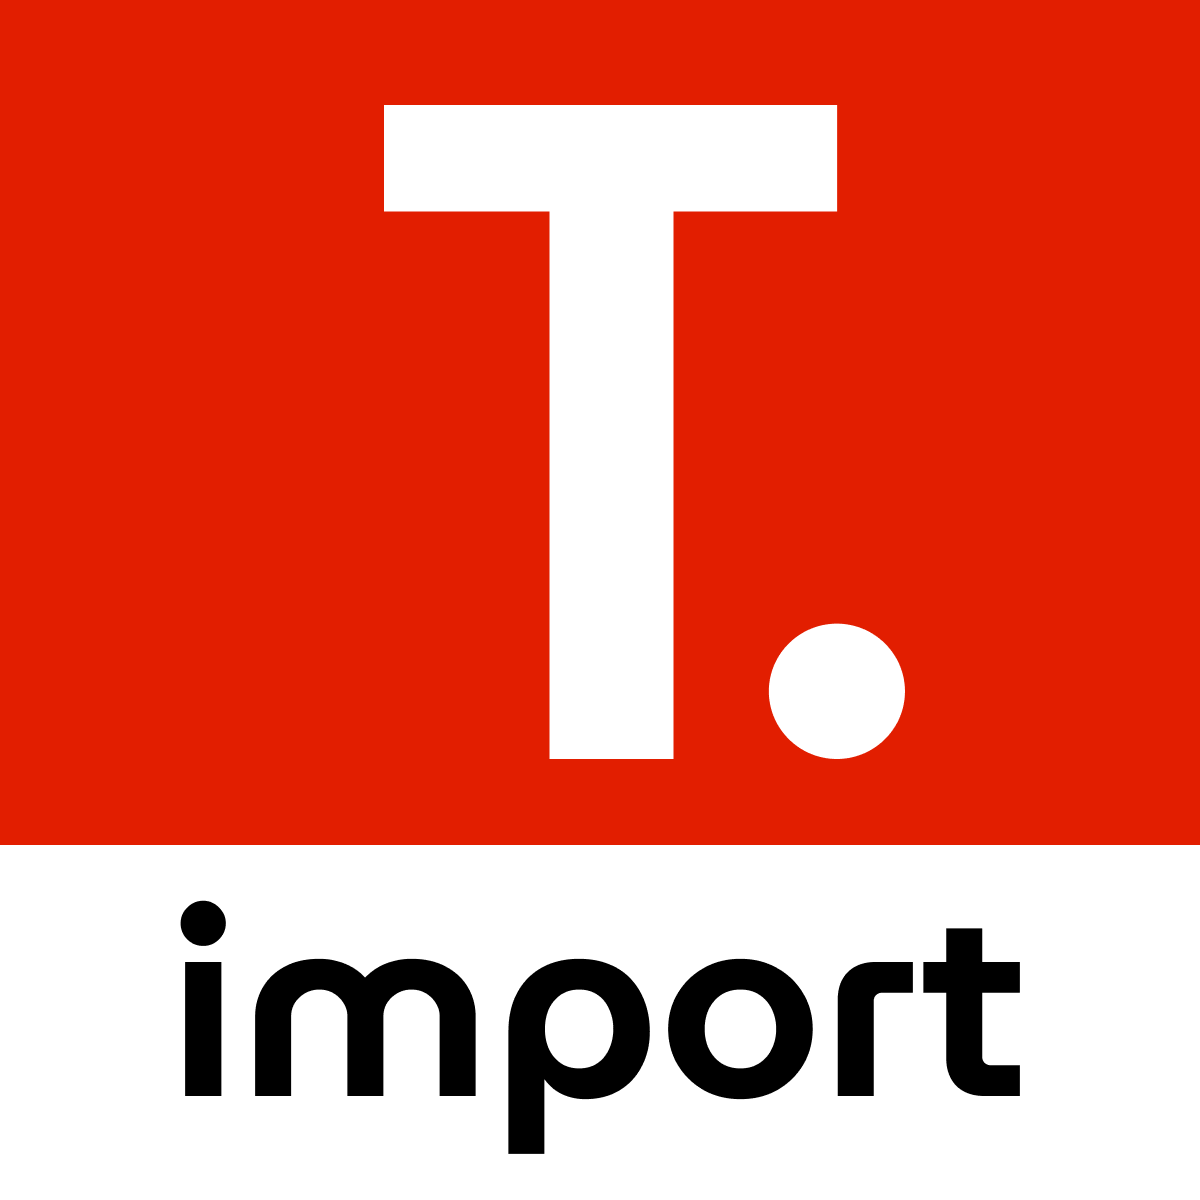 TT Ali Reviws reviews Importer